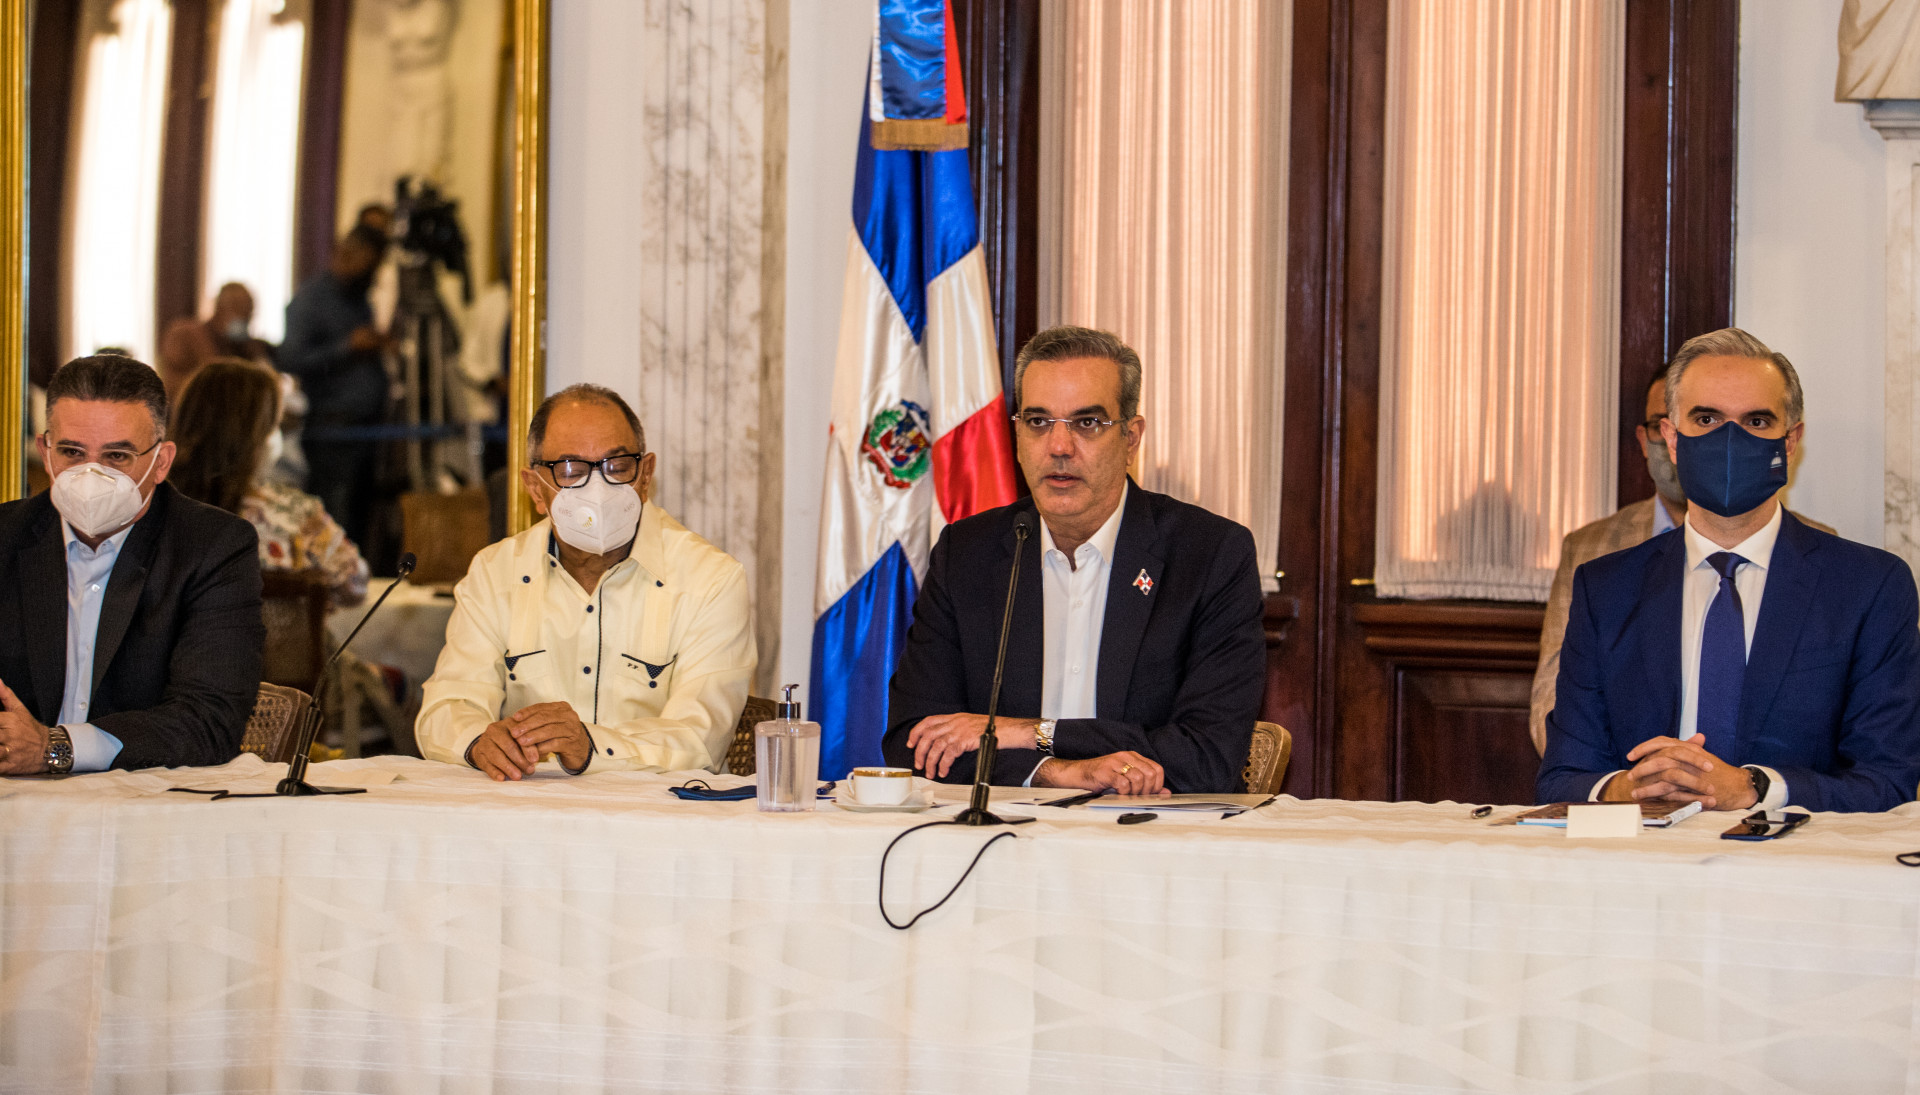 REPÚBLICA DOMINICANA: Presidente Abinader crea fondo especial para pagar regalía de empleados en FASE I, por un valor de 2,300 millones de pesos